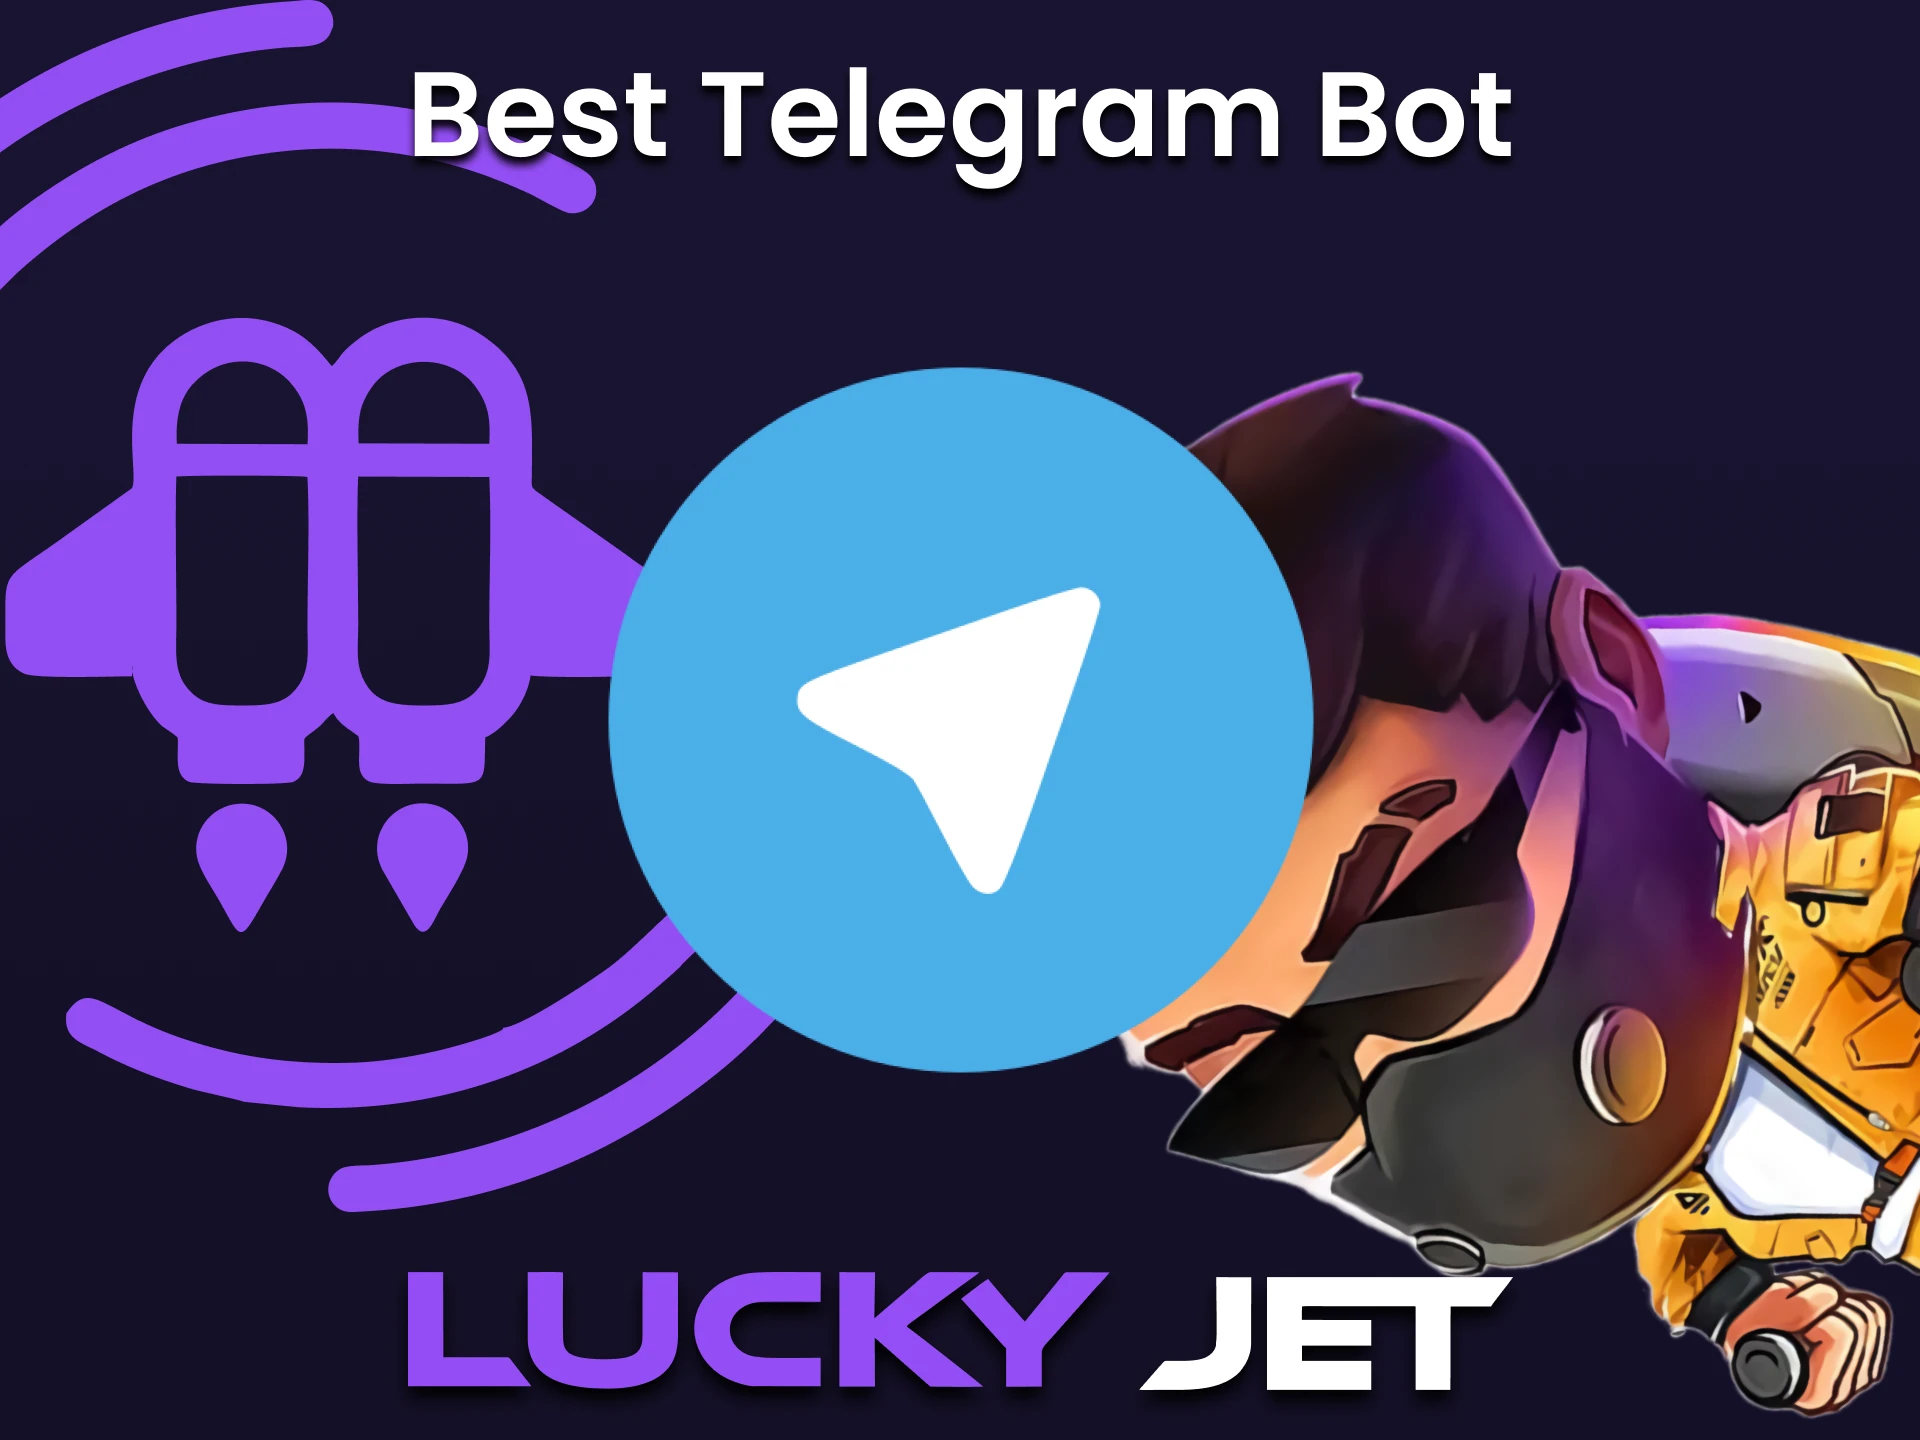 Puedes utilizar la señal para jugar a Lucky Jet a través de Telegram.